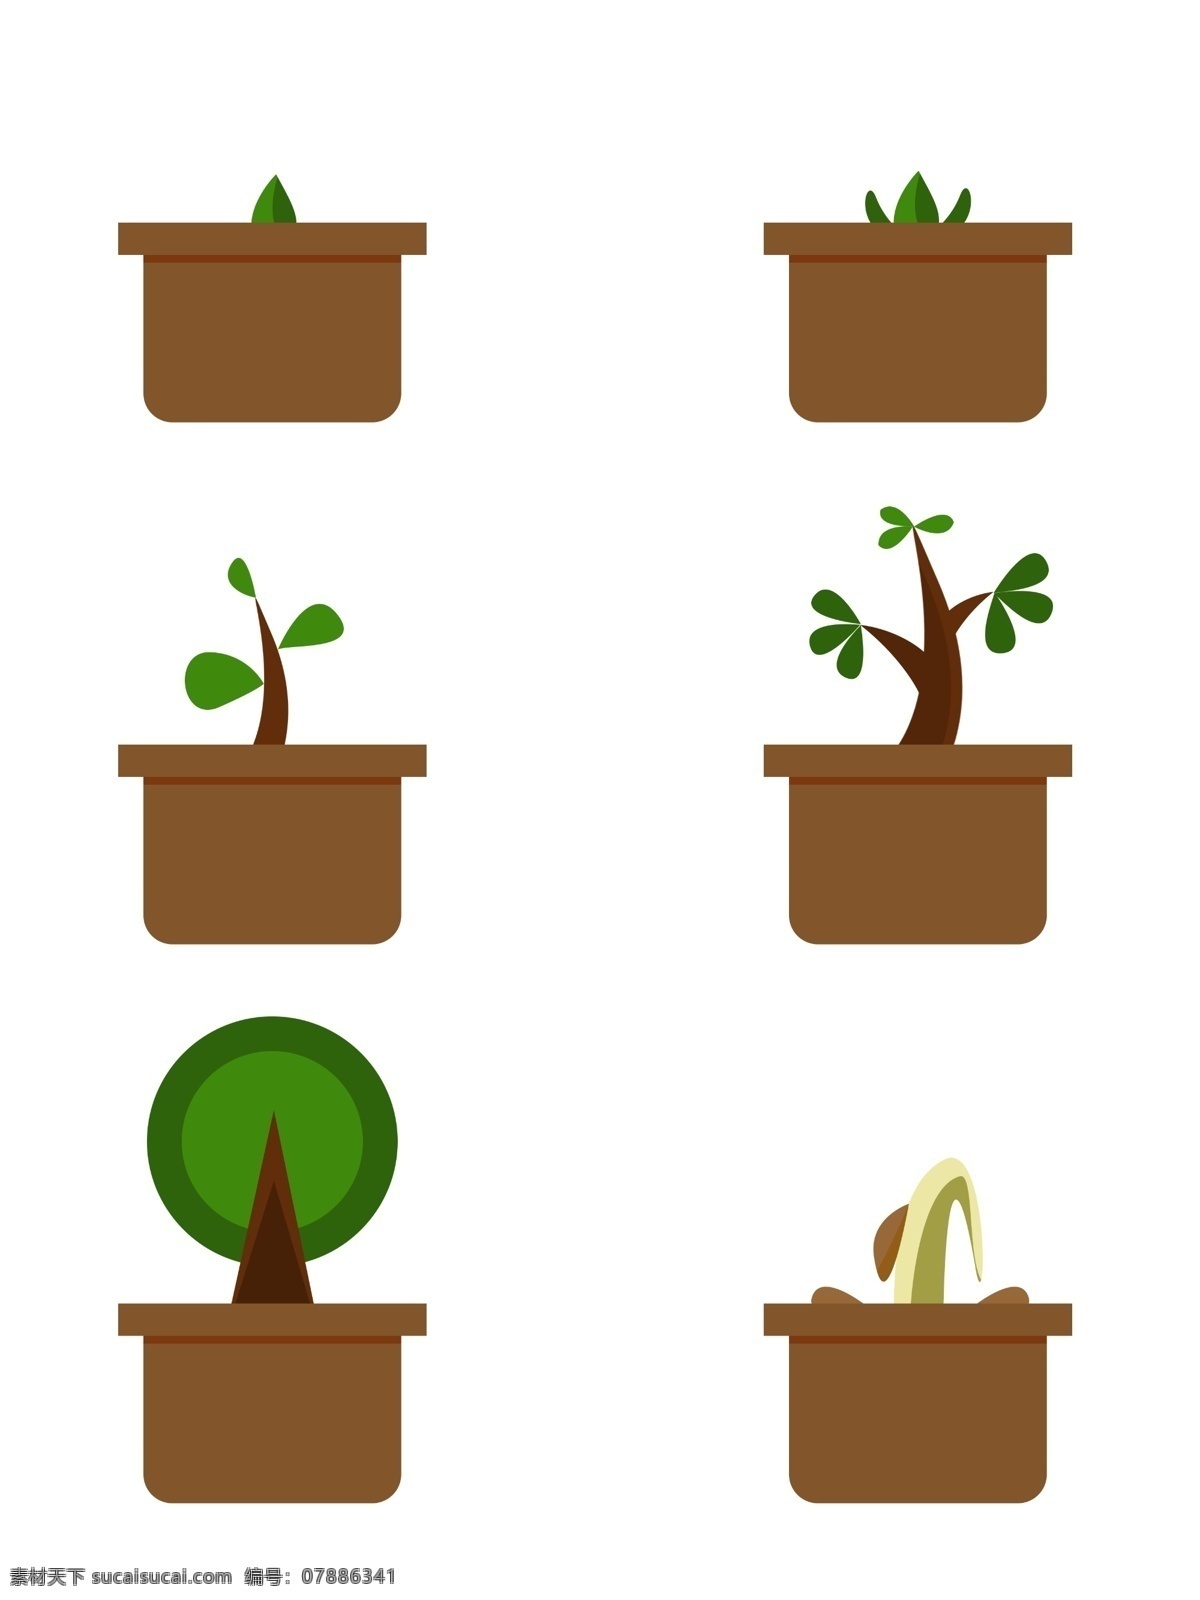 清新 可爱 植物 生长 过程 图 树苗 成长 矢量 简约